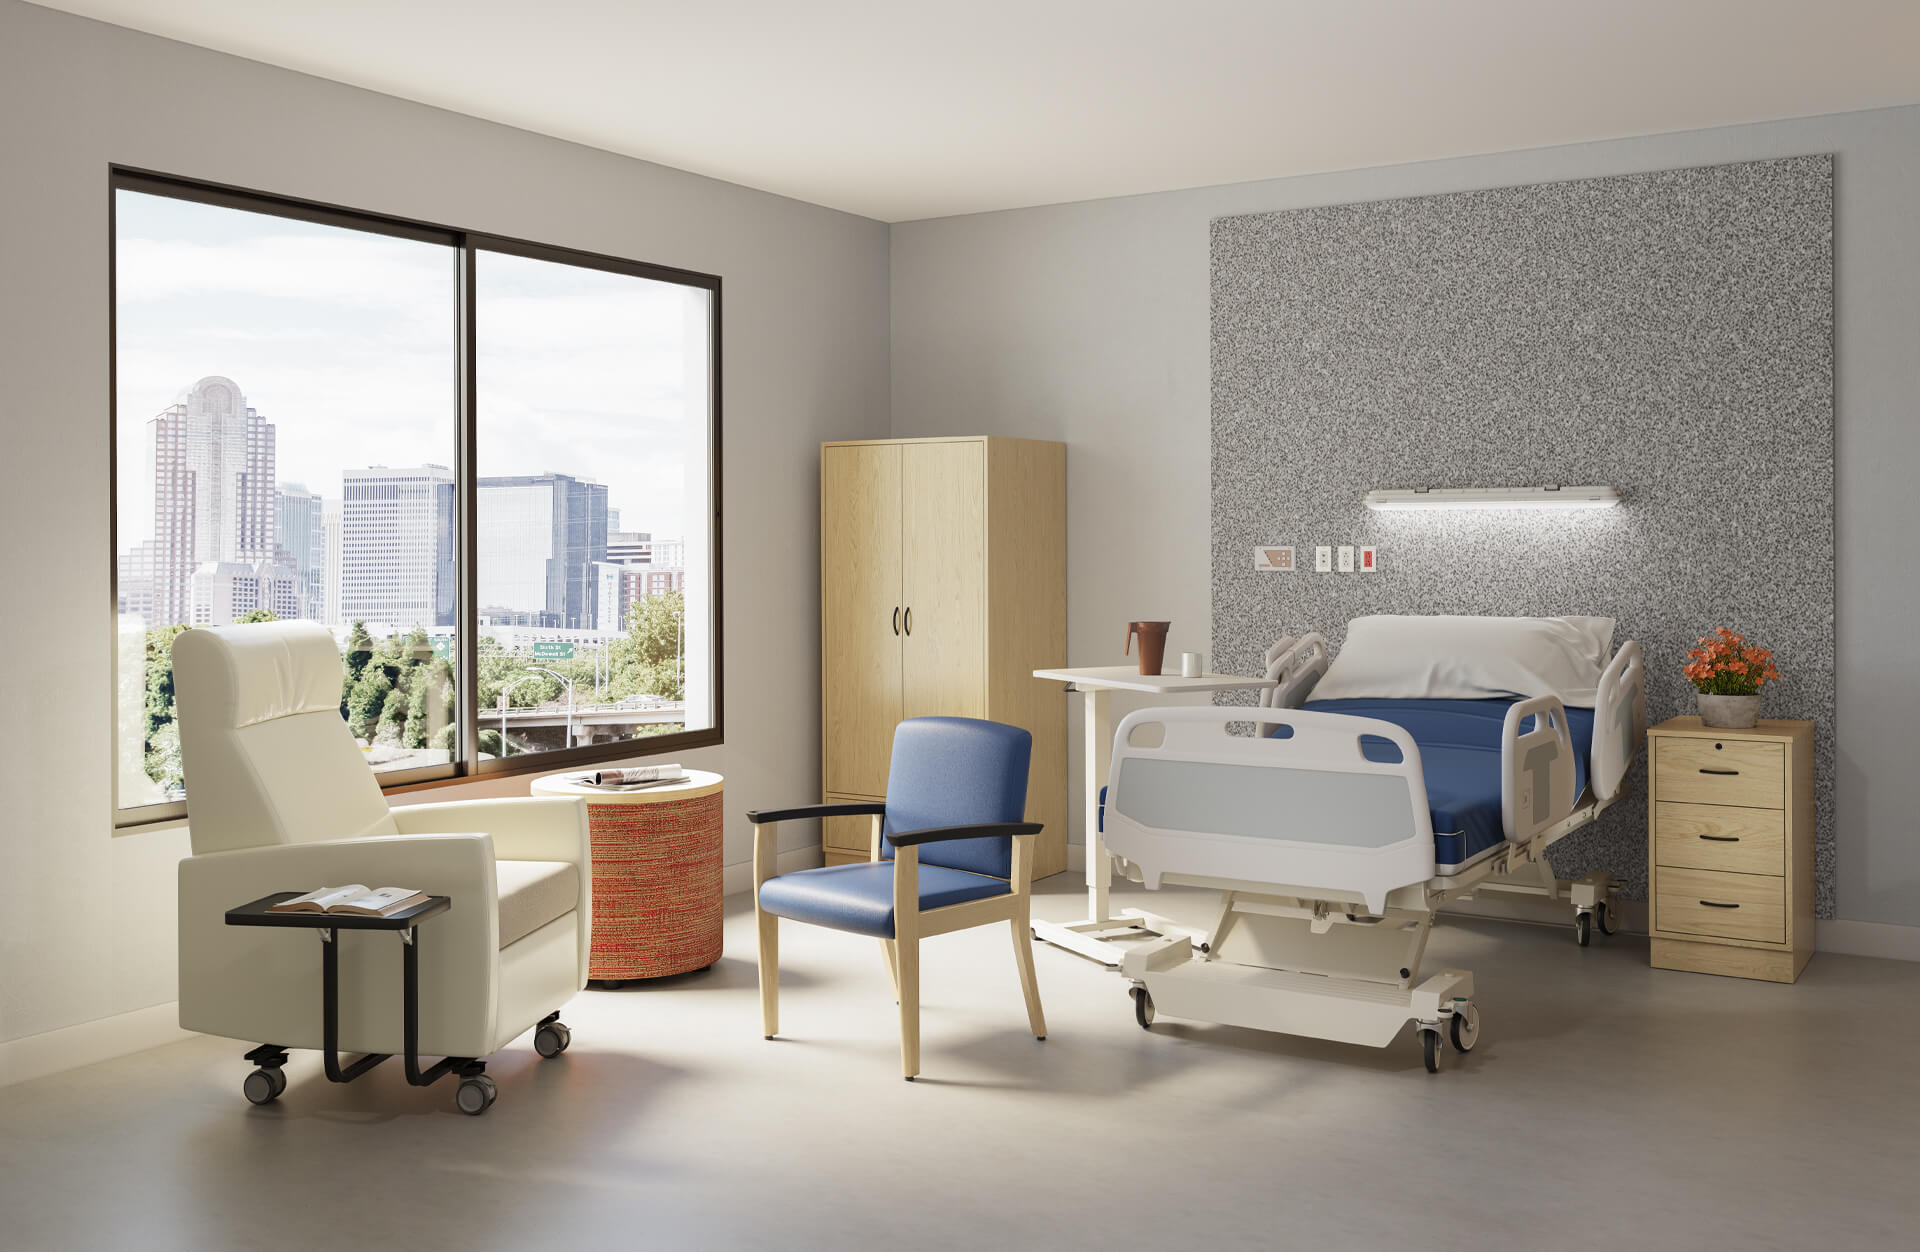 Hospital Room Furniture Lifestyle 3D Render